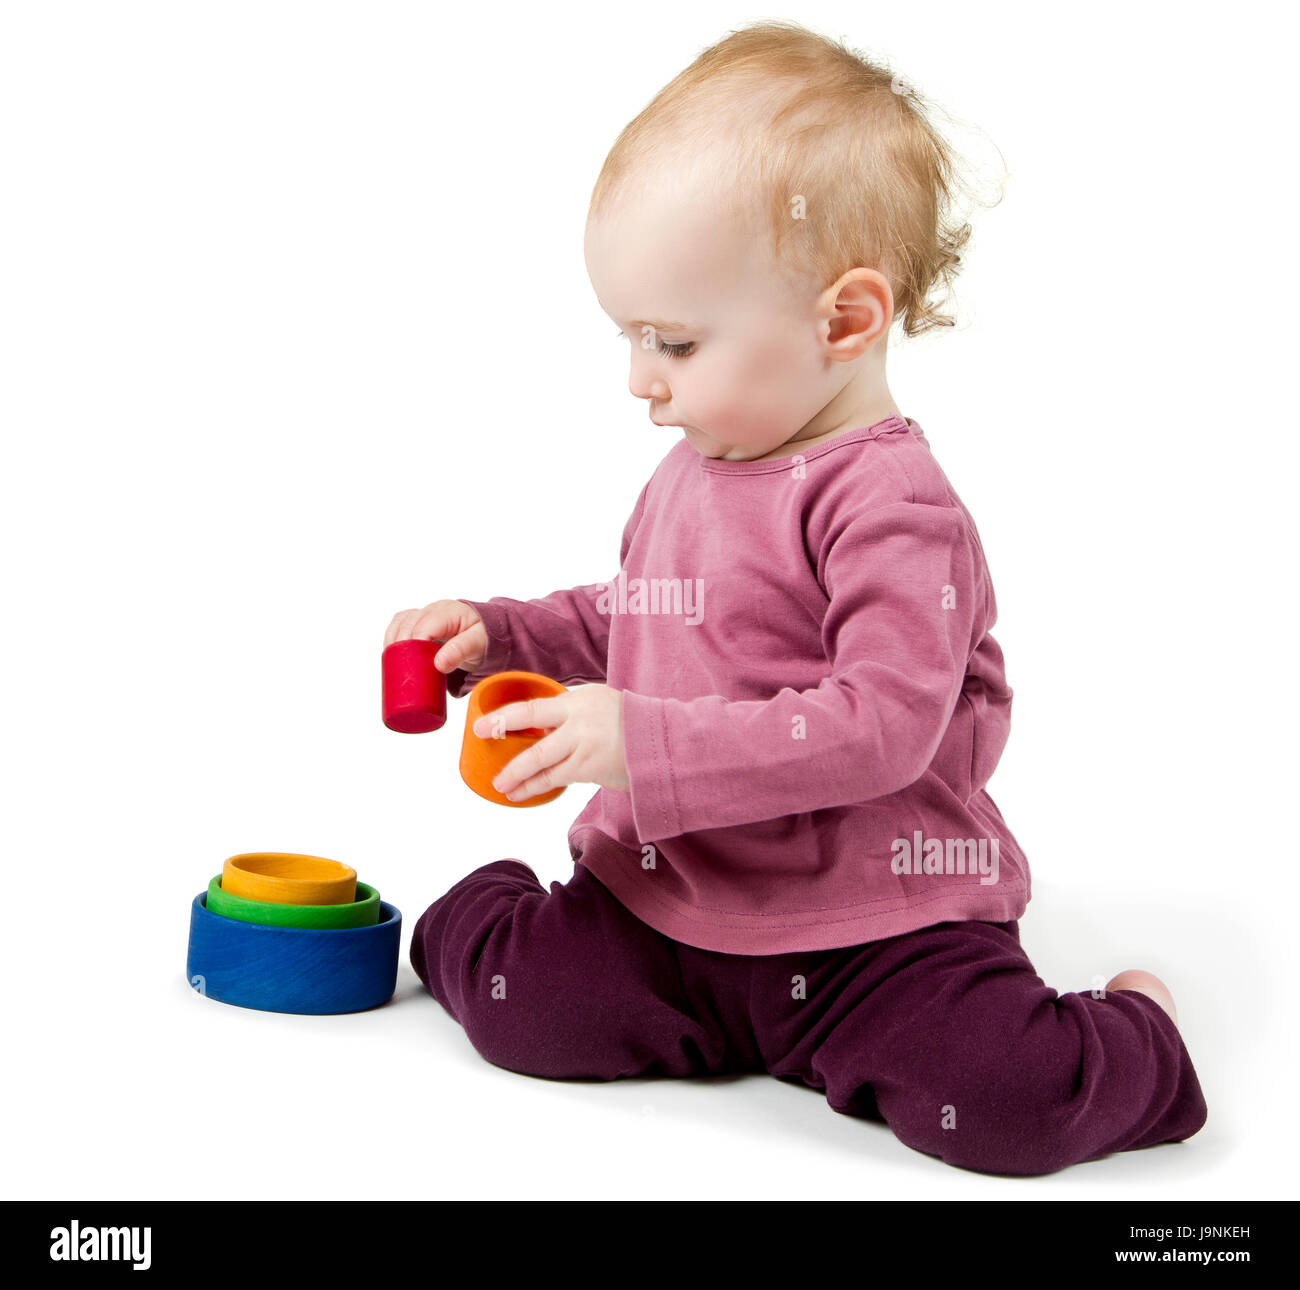 kleines Kind mit bunten Klötzchen spielen Stockfoto